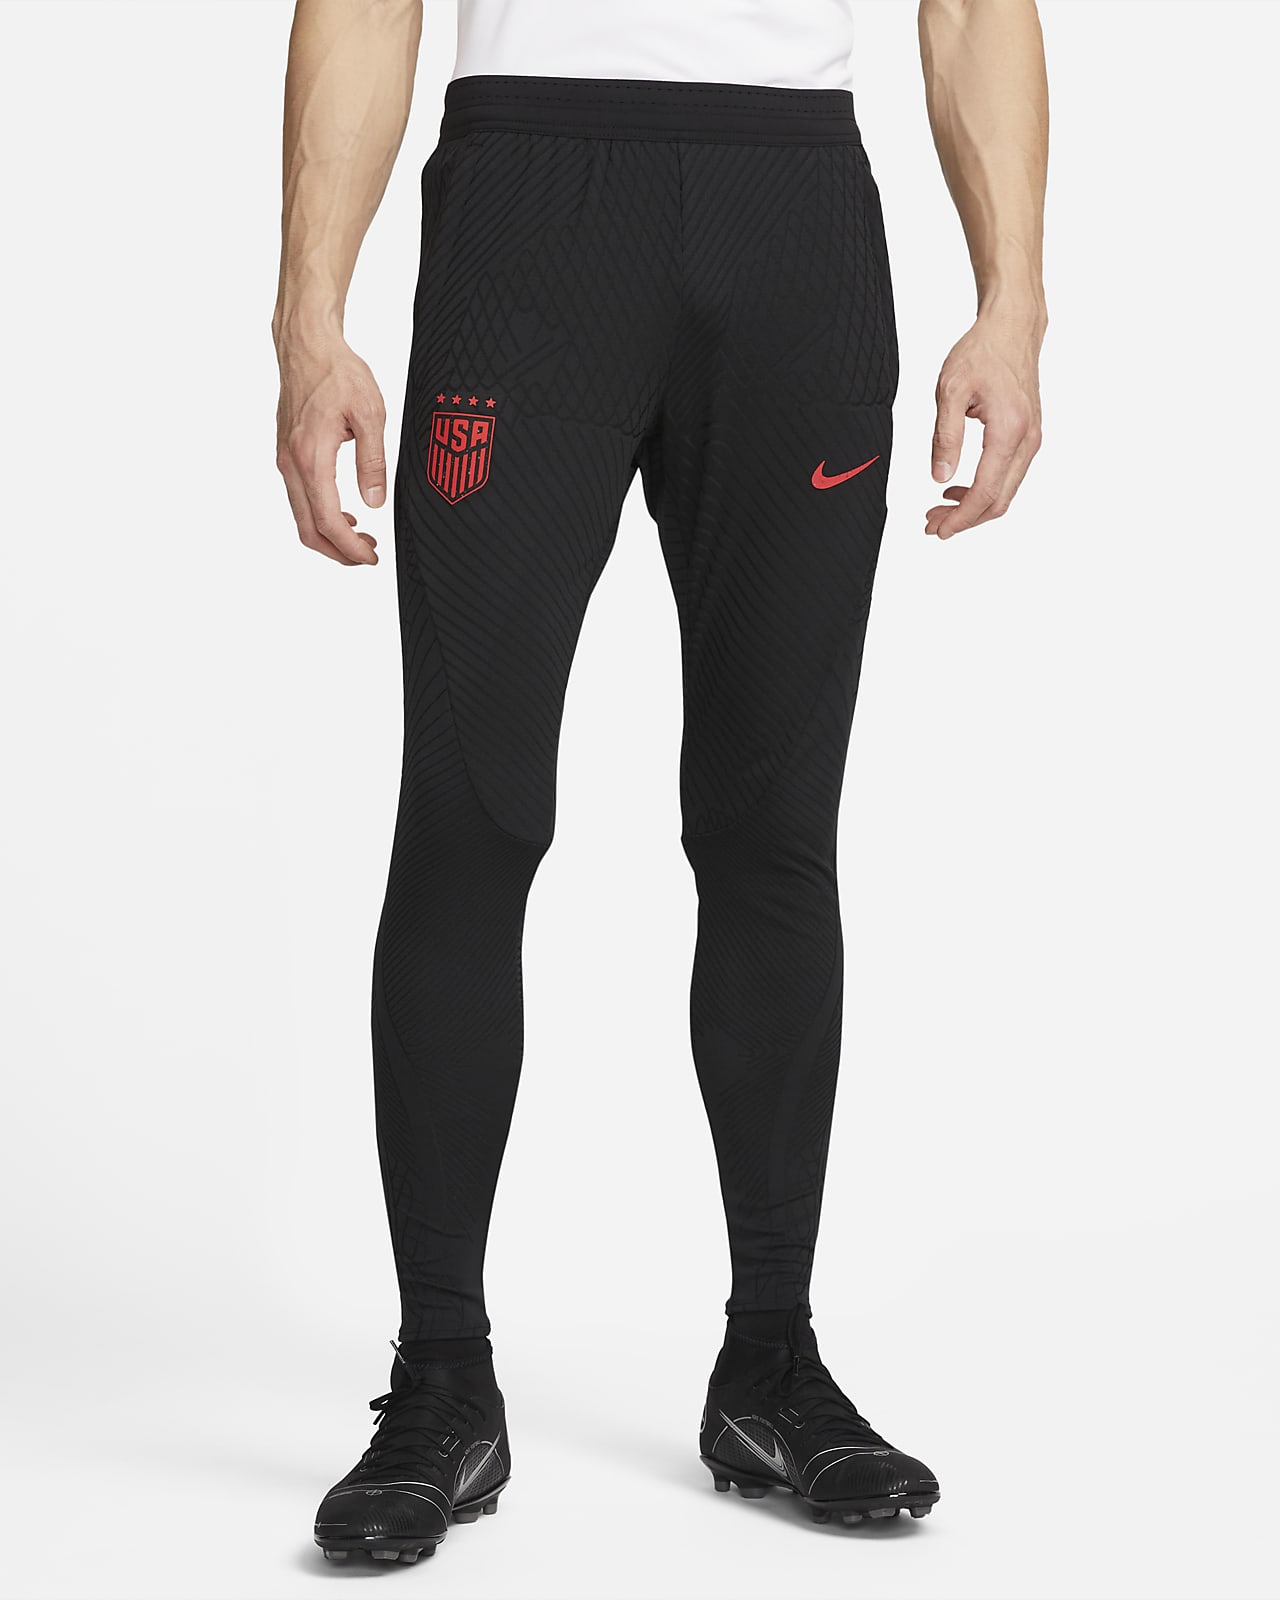 Pantalones De Fútbol Para Hombre Nike Vapor Pro Acolchados De Entrenamiento  L